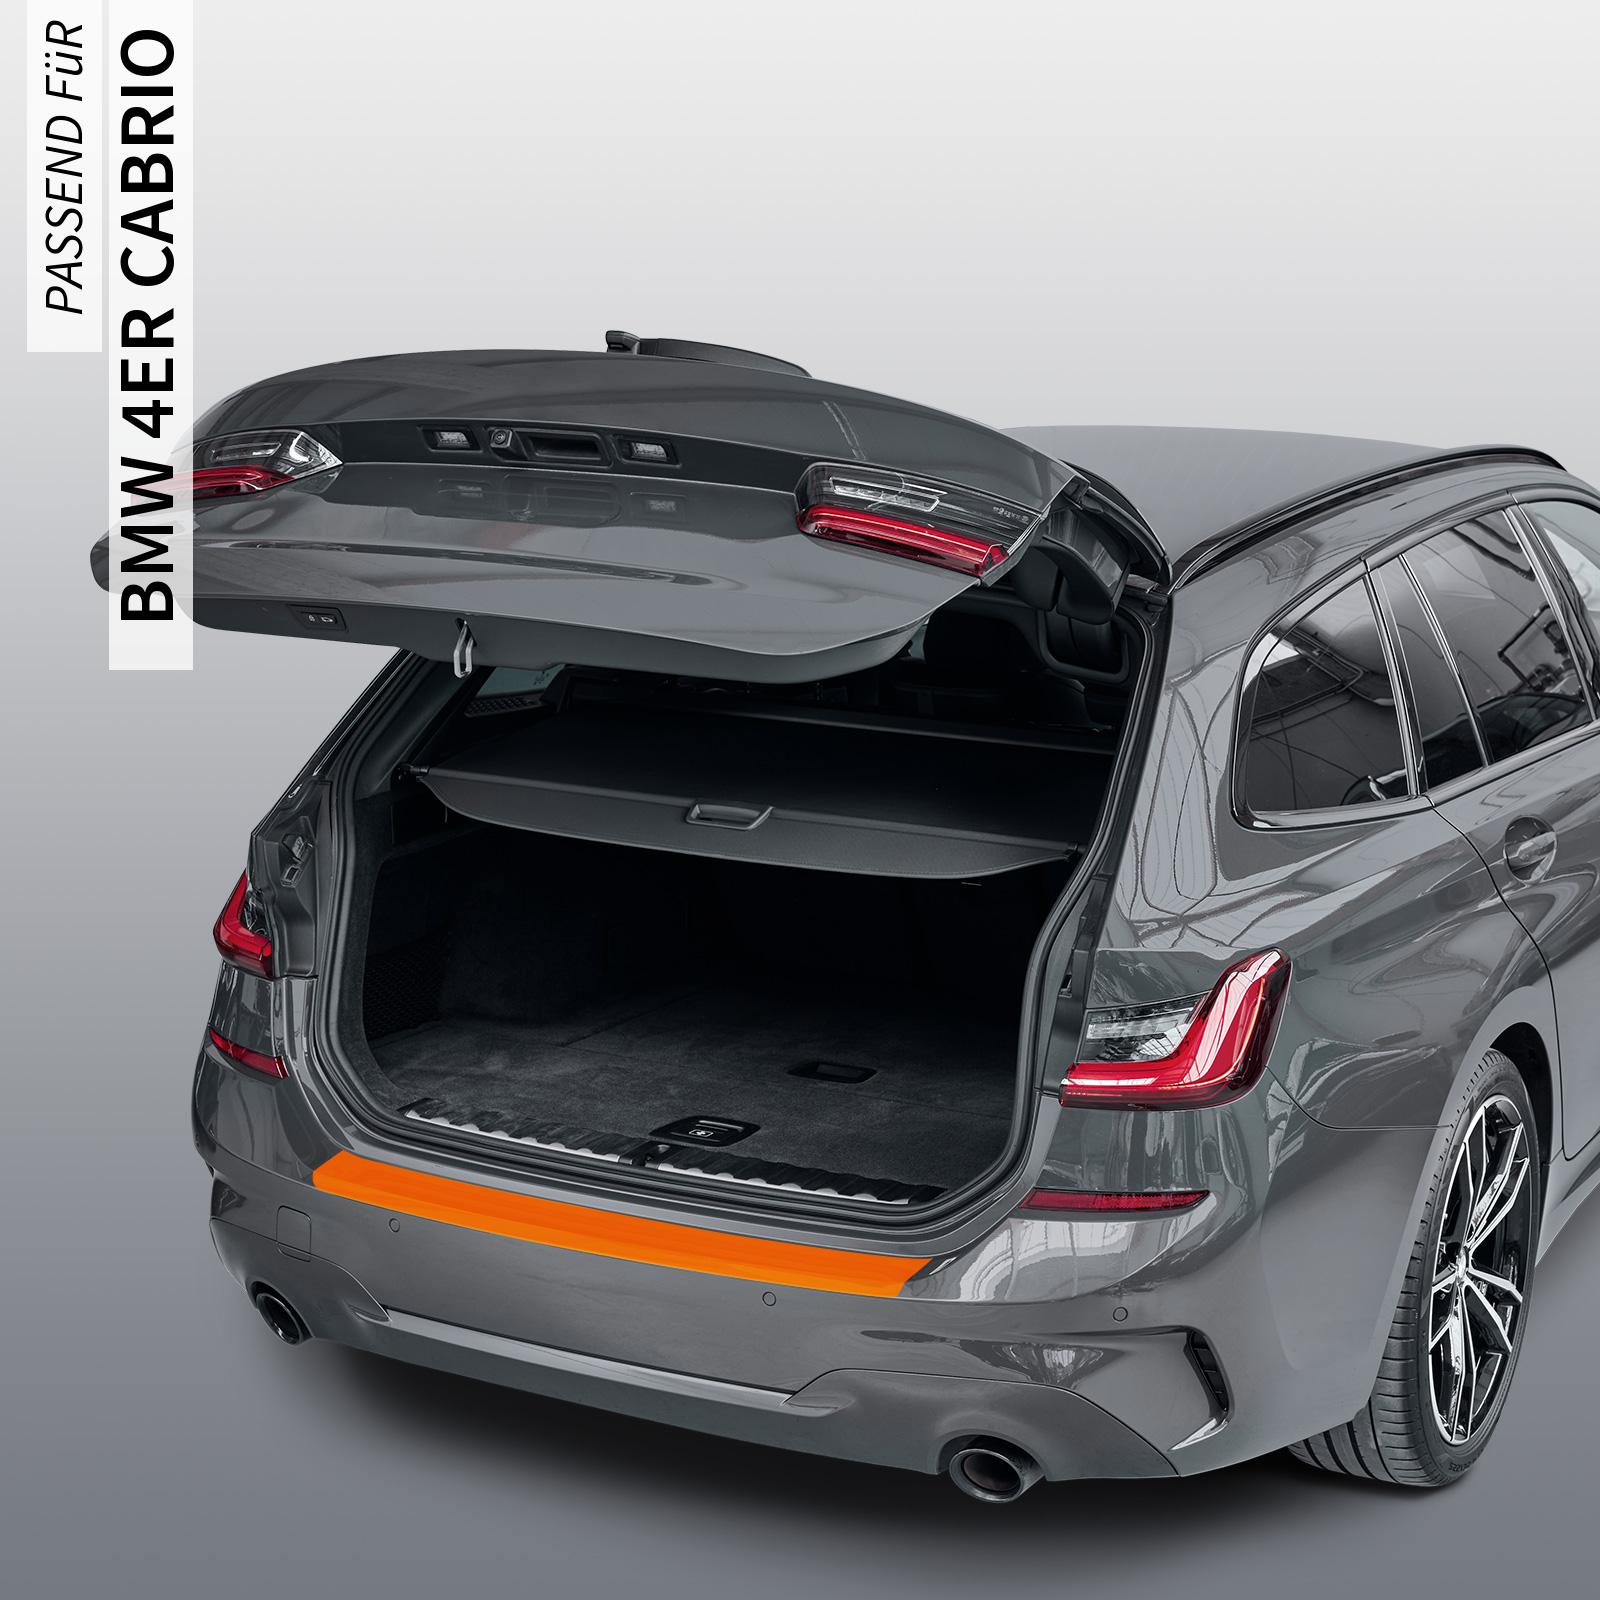 Ladekantenschutzfolie - Transparent Glatt Hochglänzend 240 µm stark für BMW 4er Cabrio Typ G23, ab BJ 10/2020